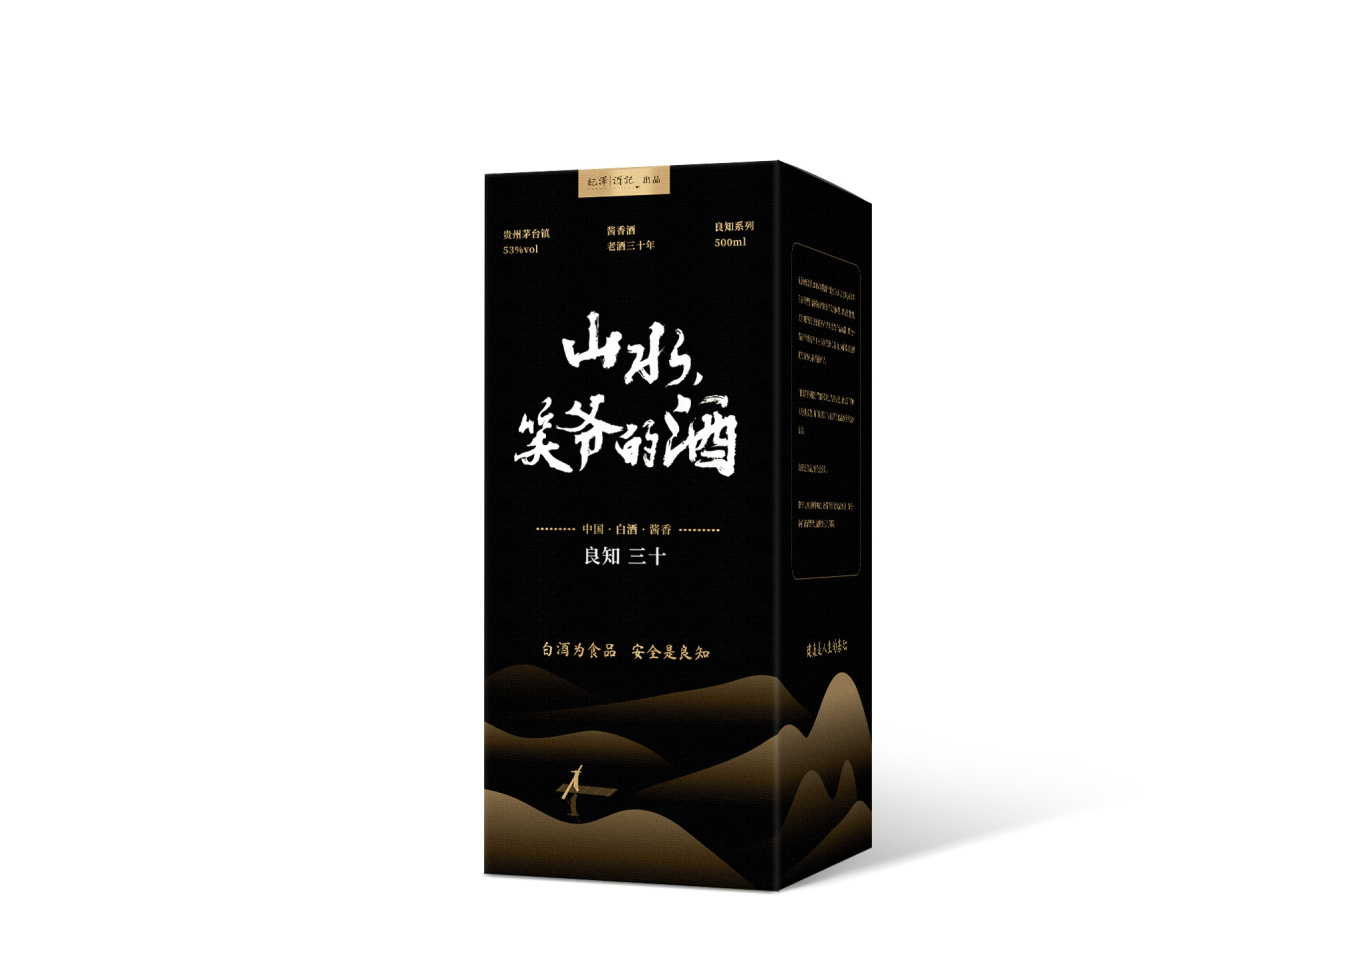 紀澤系列醬香酒包裝設計圖13